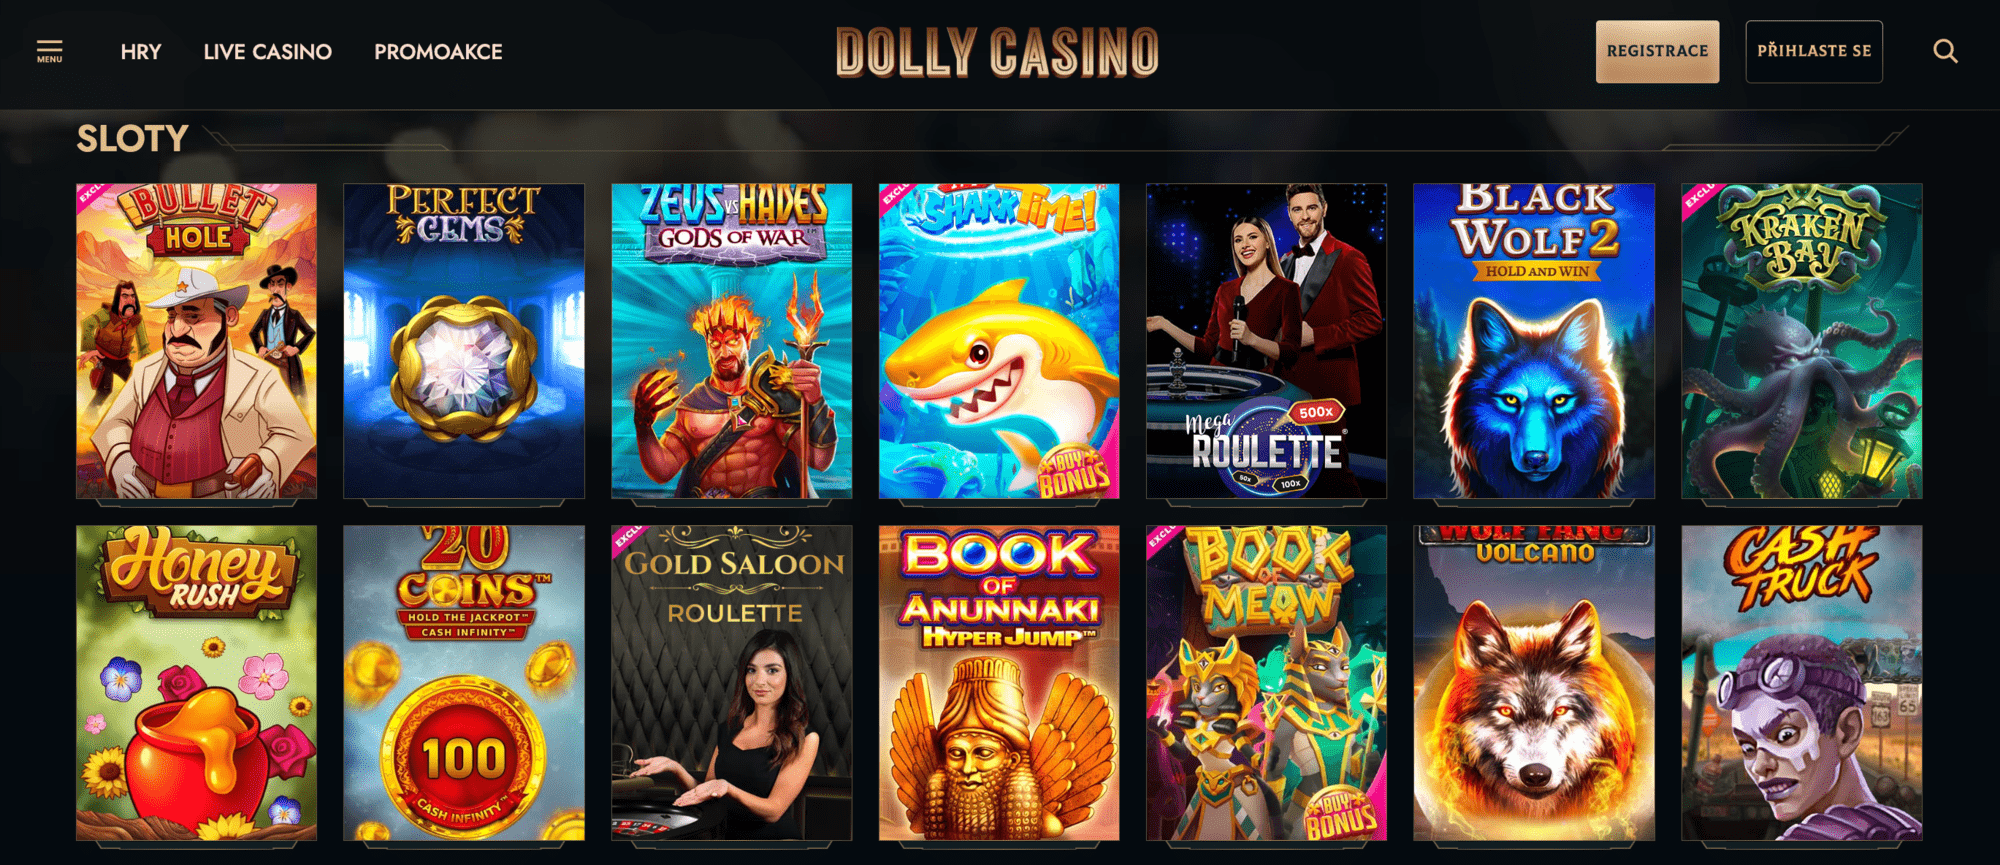 Slotové automaty nabízené v Dolly Casino